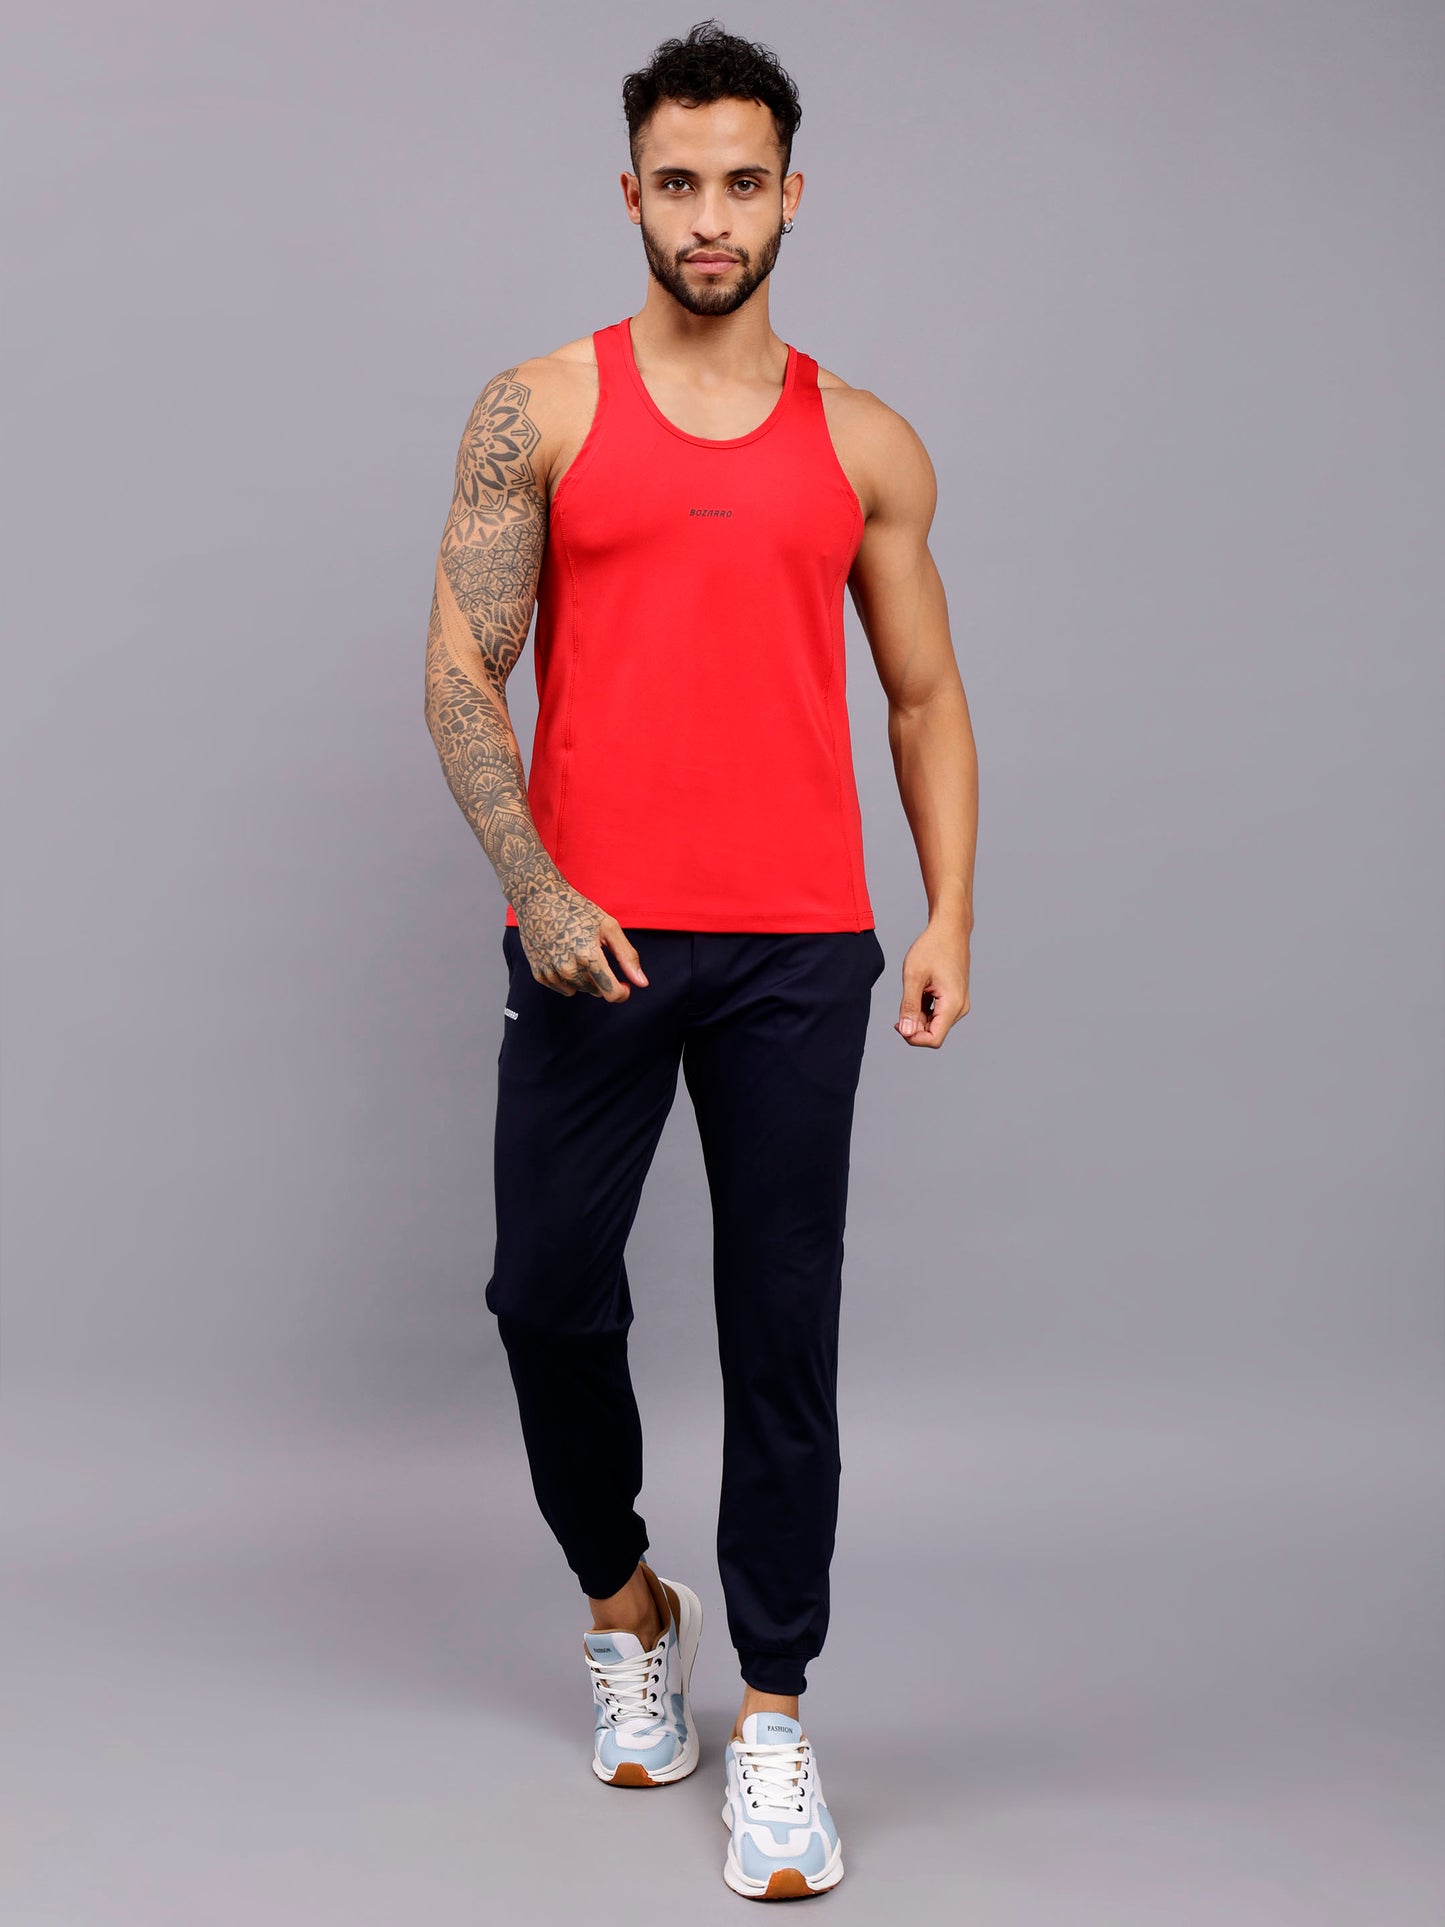 Men's Regular Fit Stringer | Men's Gym Tank Top Stringers |Solid Low Neck Tank Top For Men- red